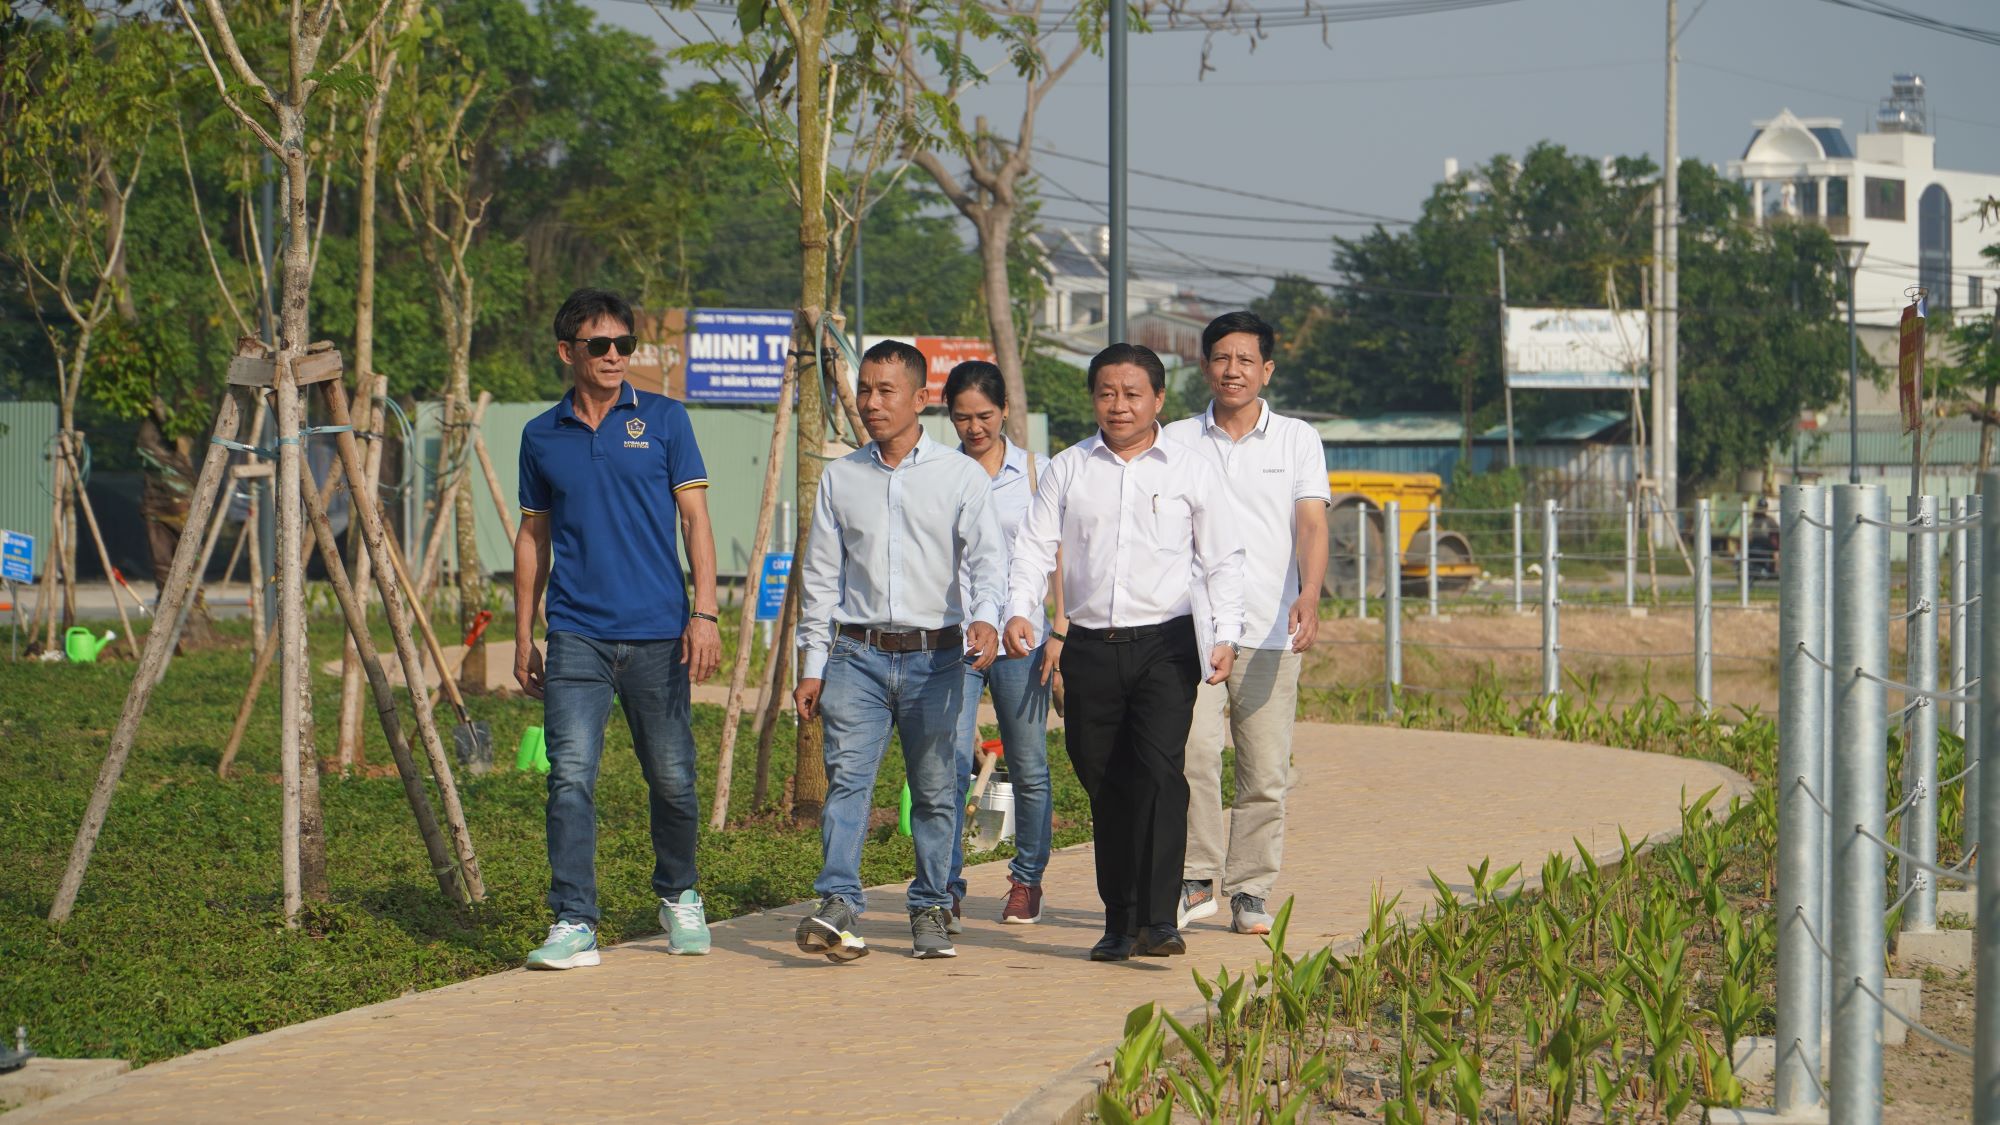 Công viên gần 20 tỷ đồng ở Bình Tân đi vào hoạt động sau hơn 20 năm chờ đợi - Ảnh 8.